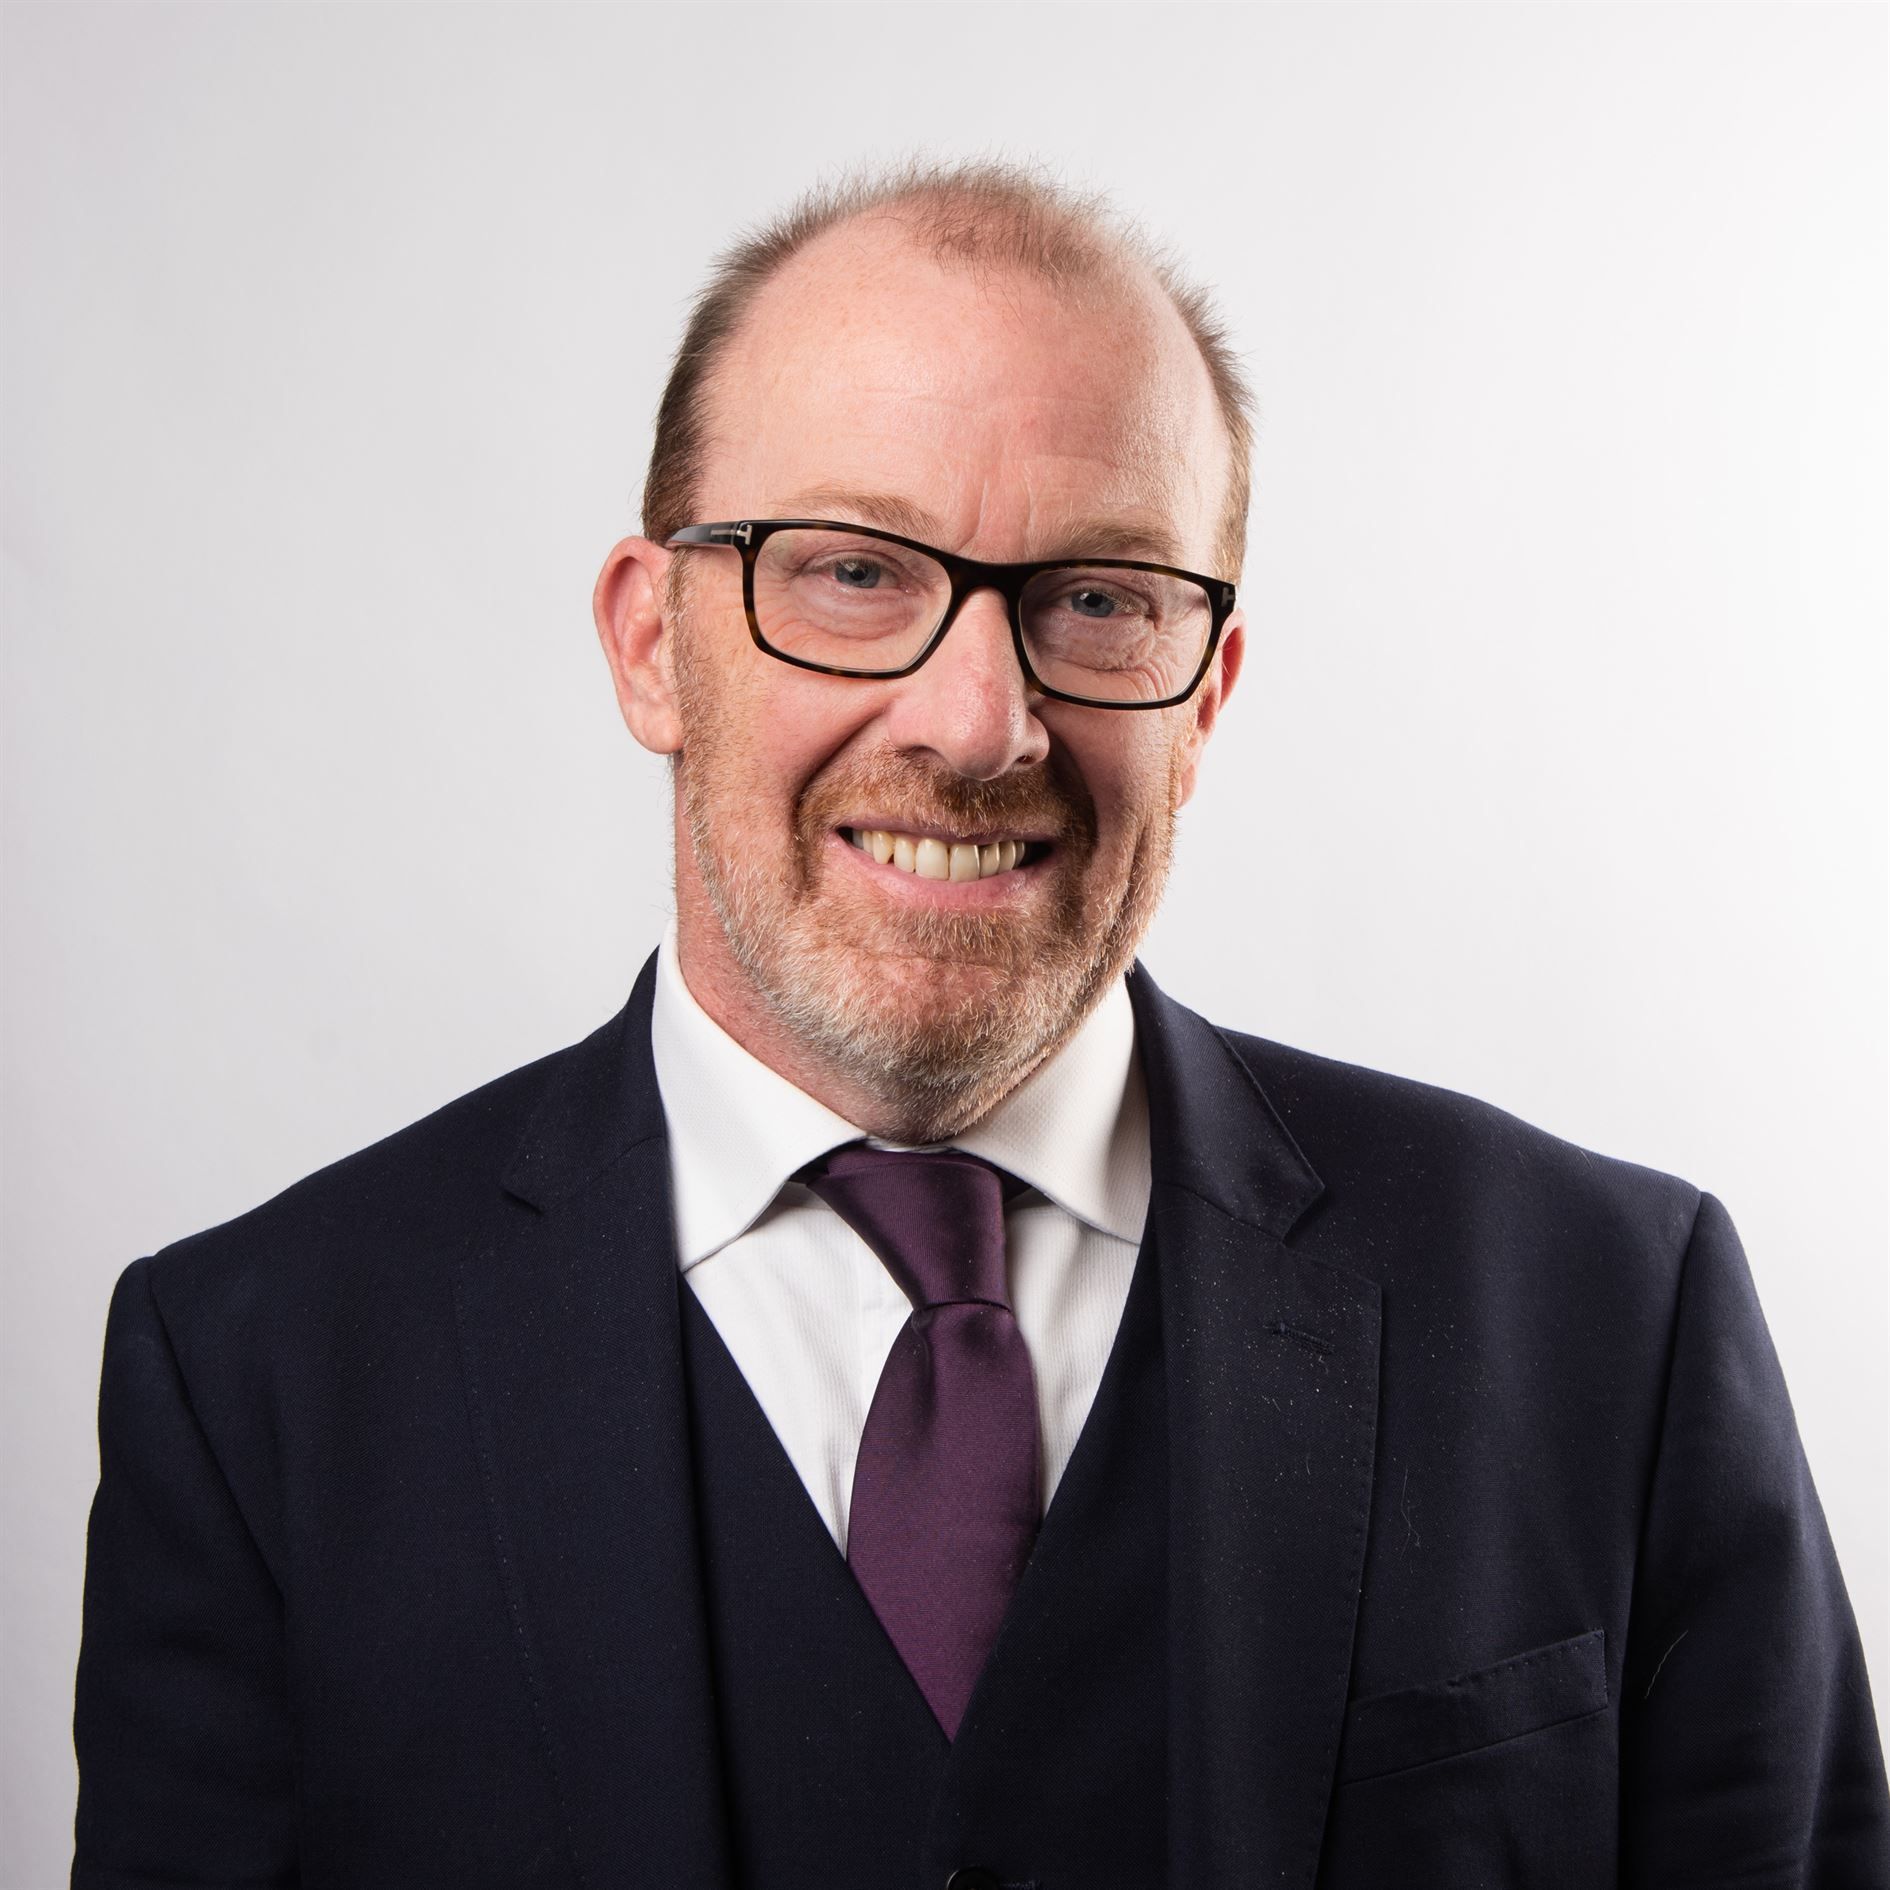 Fairstone financial adviser Simon Knighton